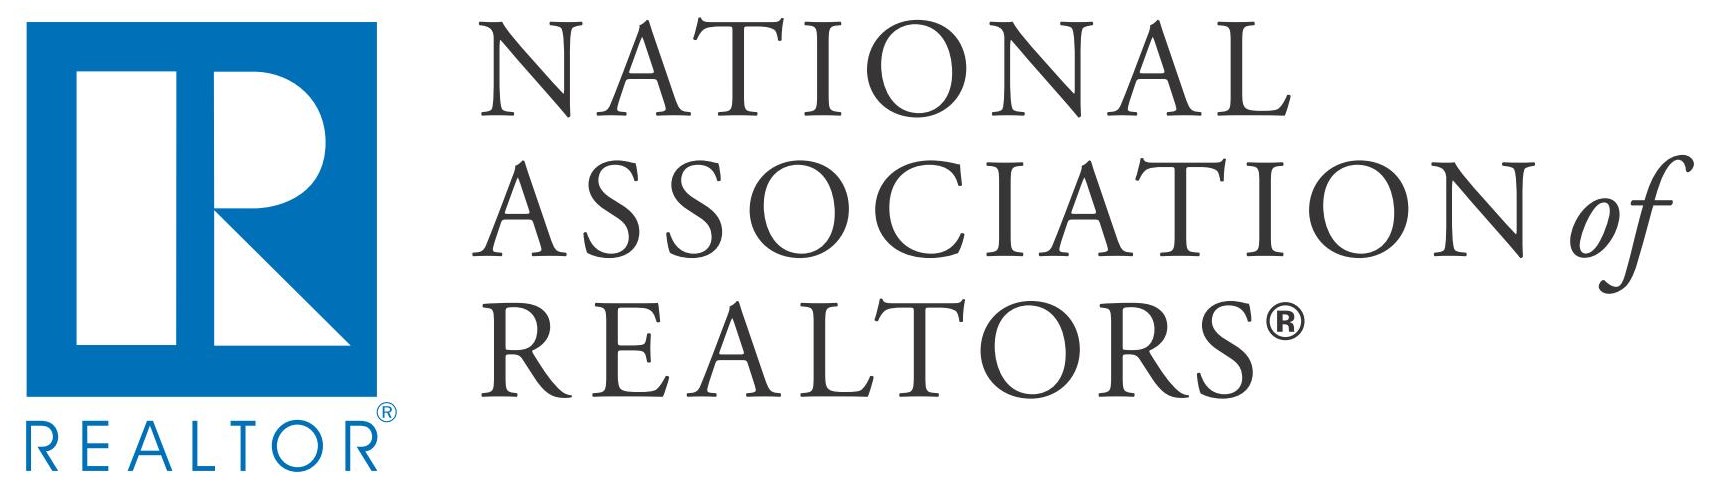 National_Association_of_Realtors_Logo.jpg